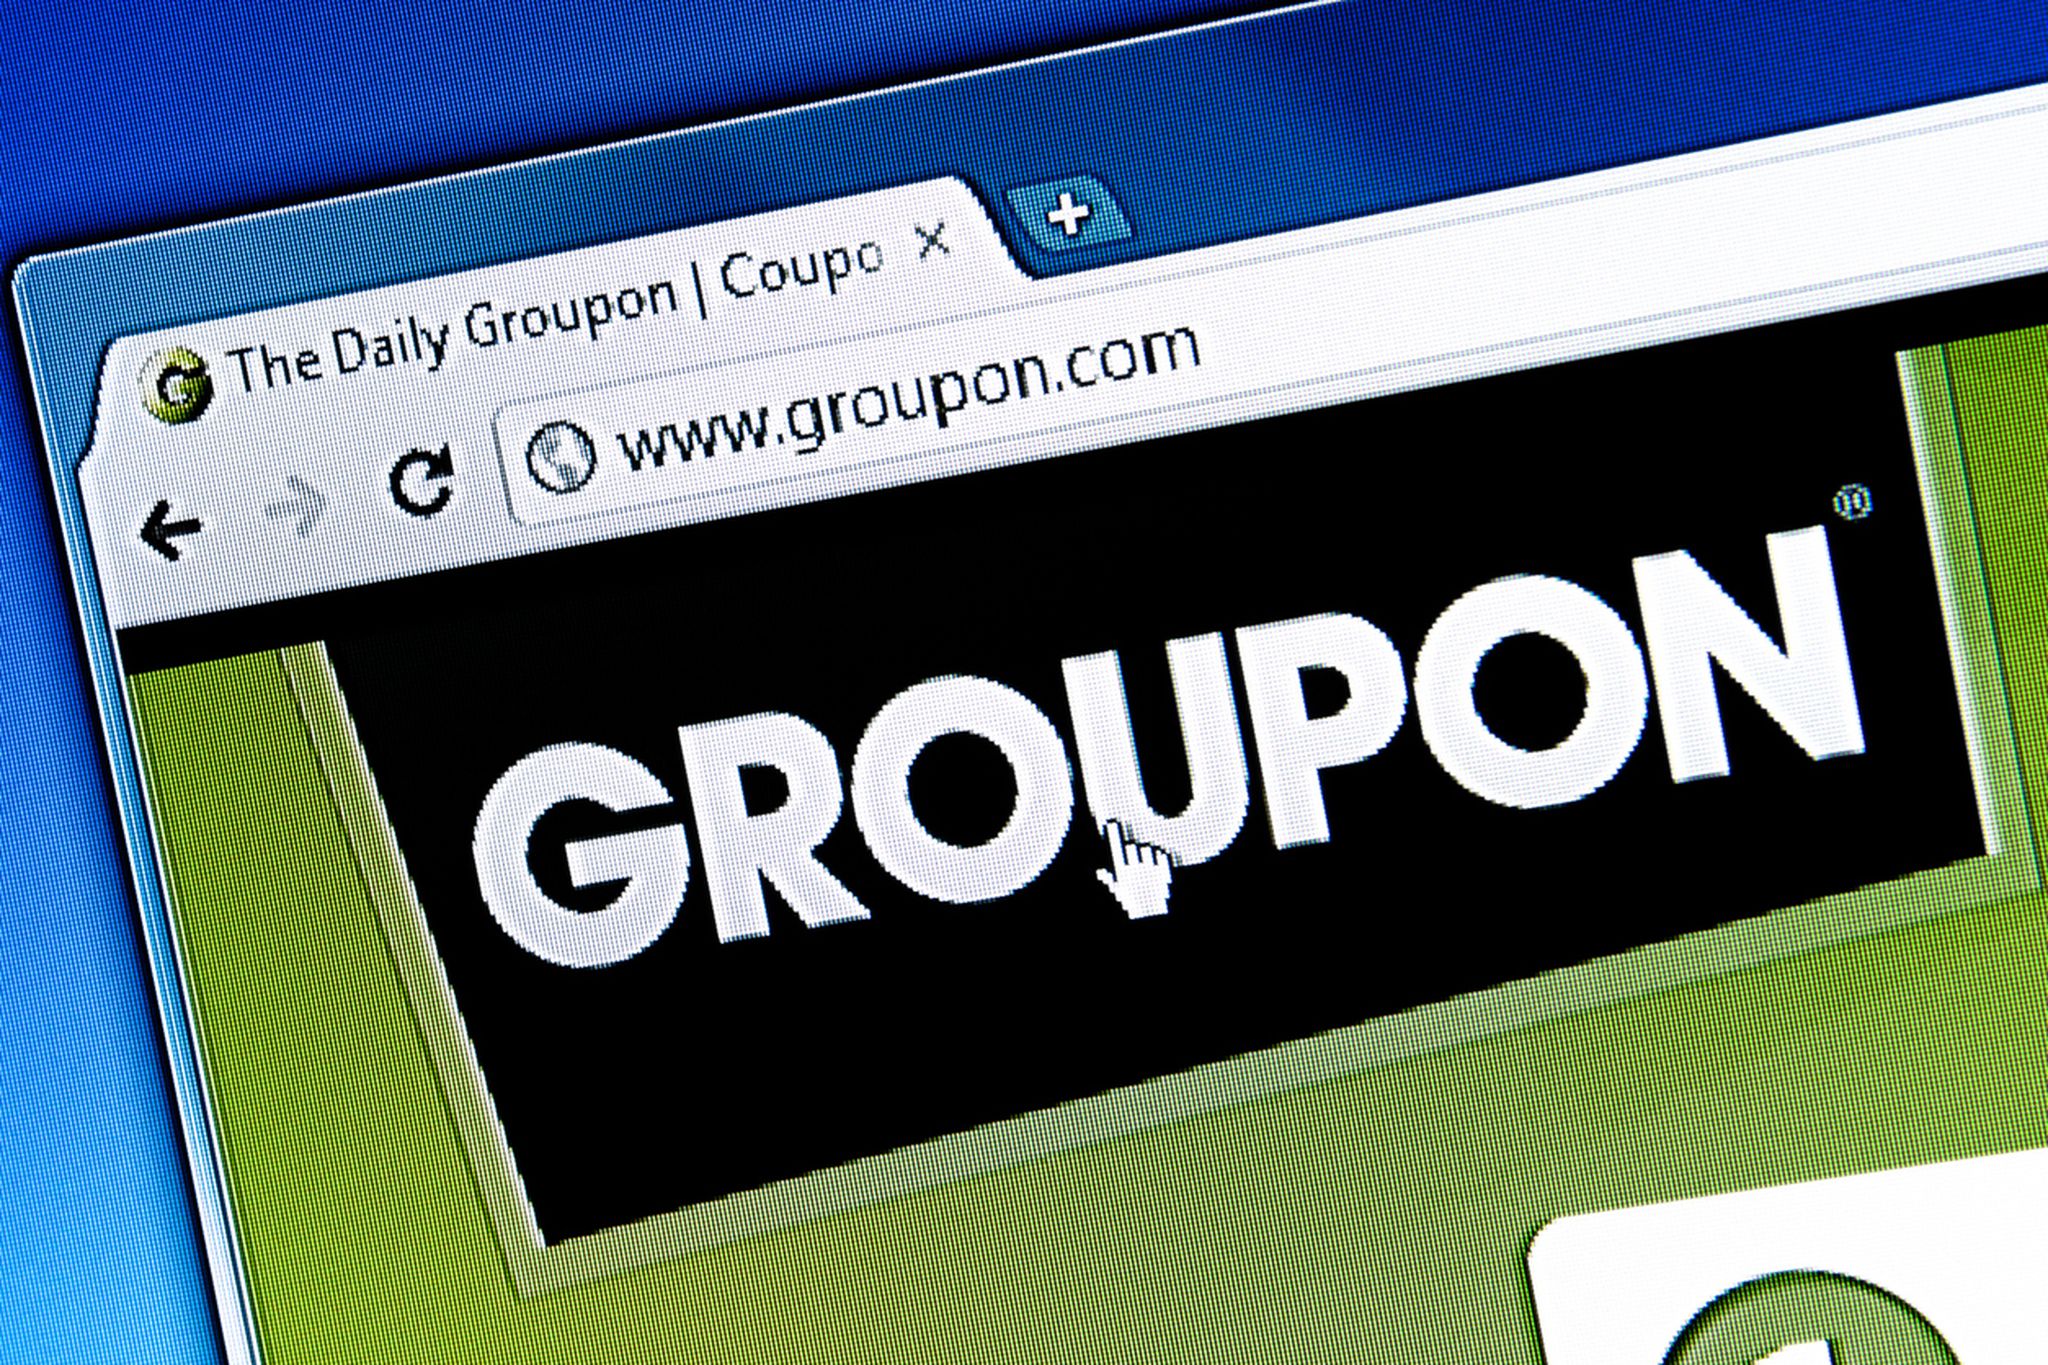 Vraag naar Groupon blijft aanhouden